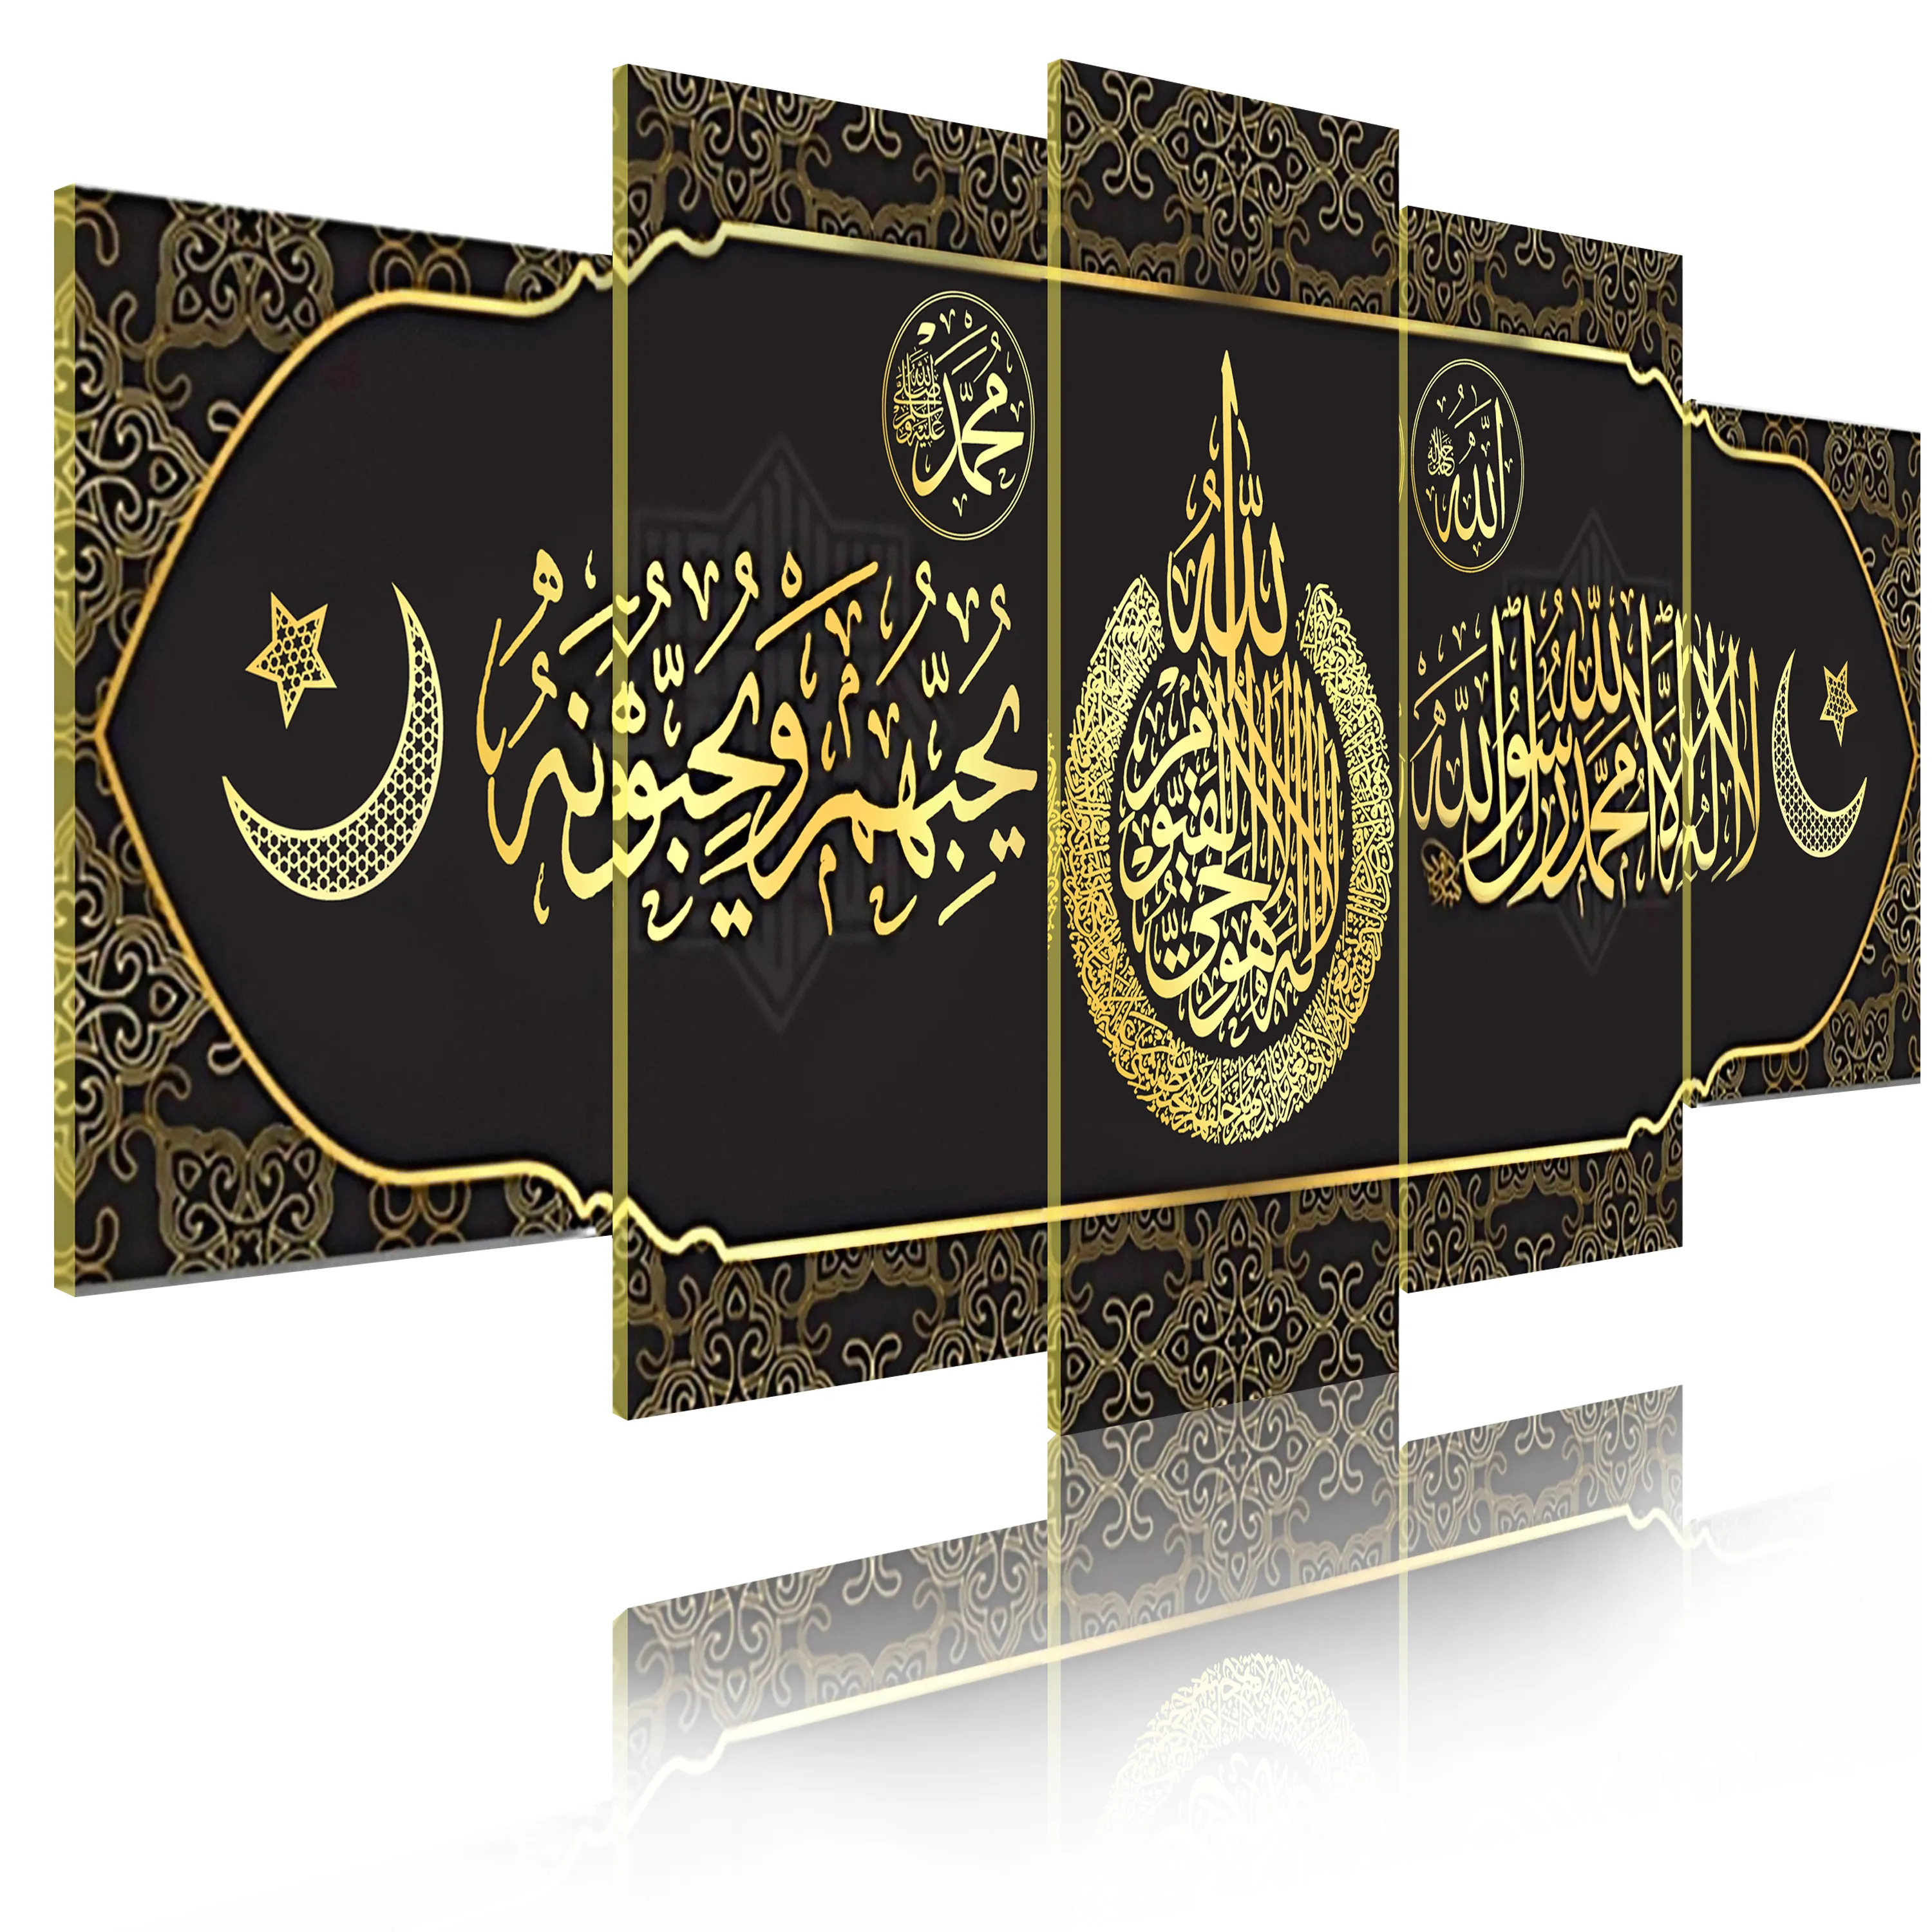 अरबी सुलेख दीवार कला पोस्टर 5 प्लेटें कुरान कैनवास चित्र गृह सजावट तस्वीर मुस्लिम <span class=keywords><strong>धर्म</strong></span> 2021